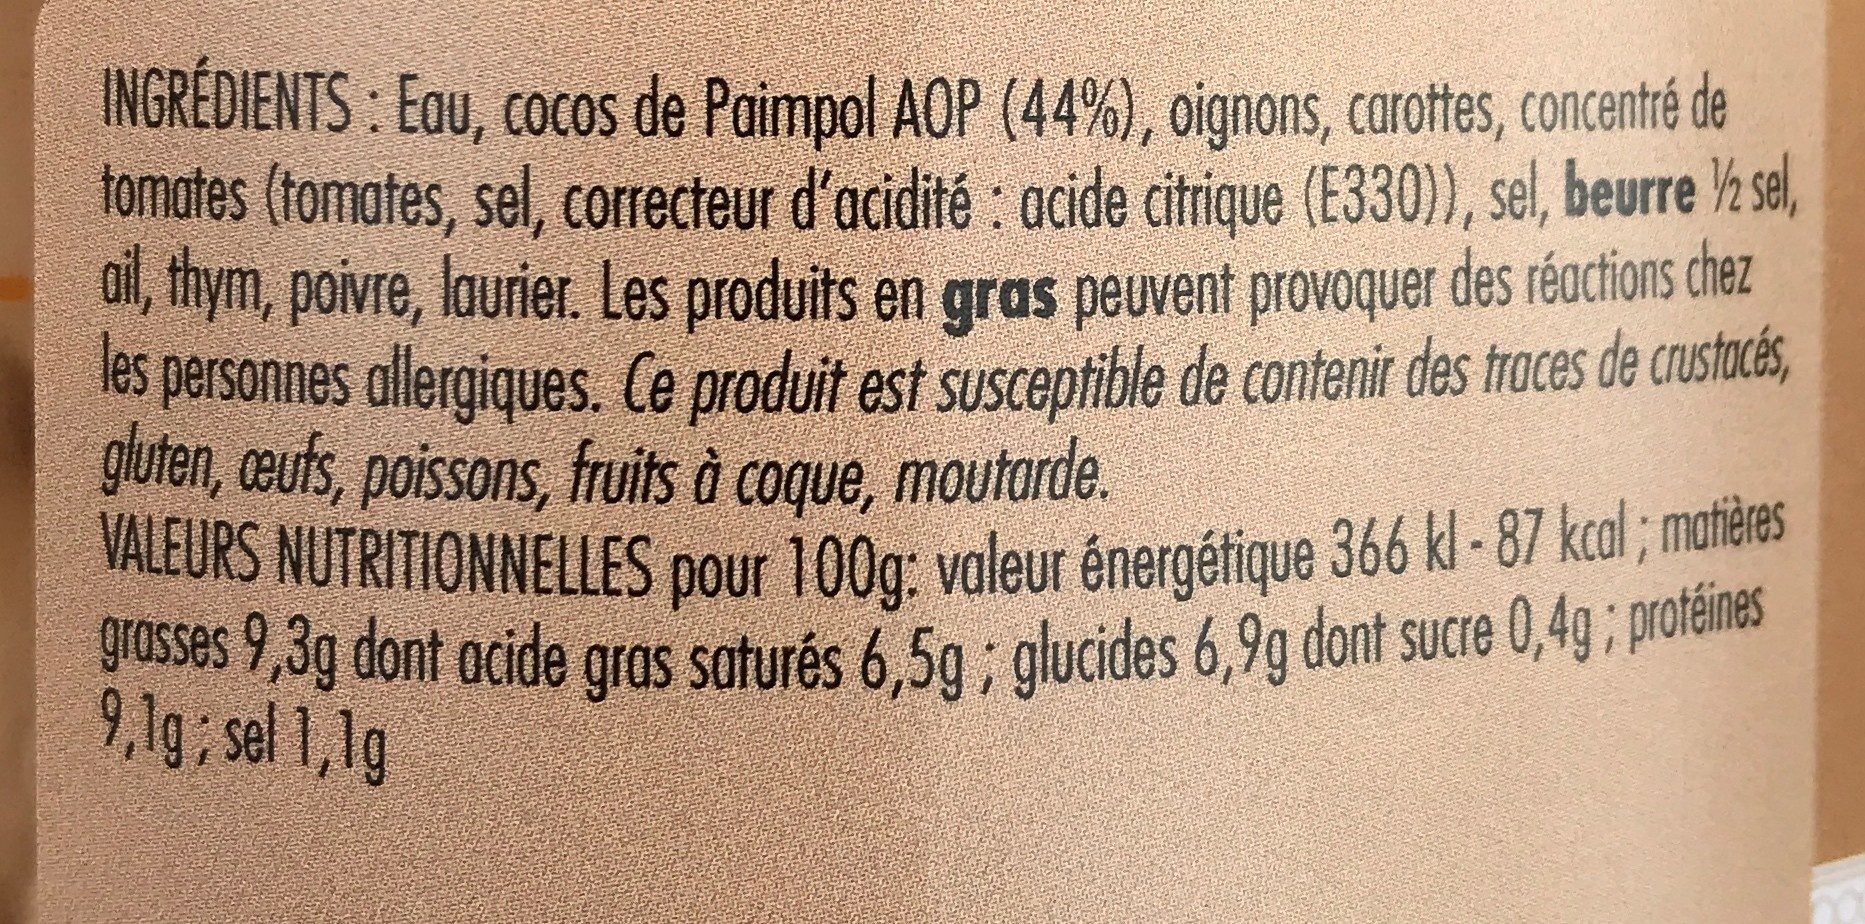 Cocos de paimpol - Ingredientes - fr